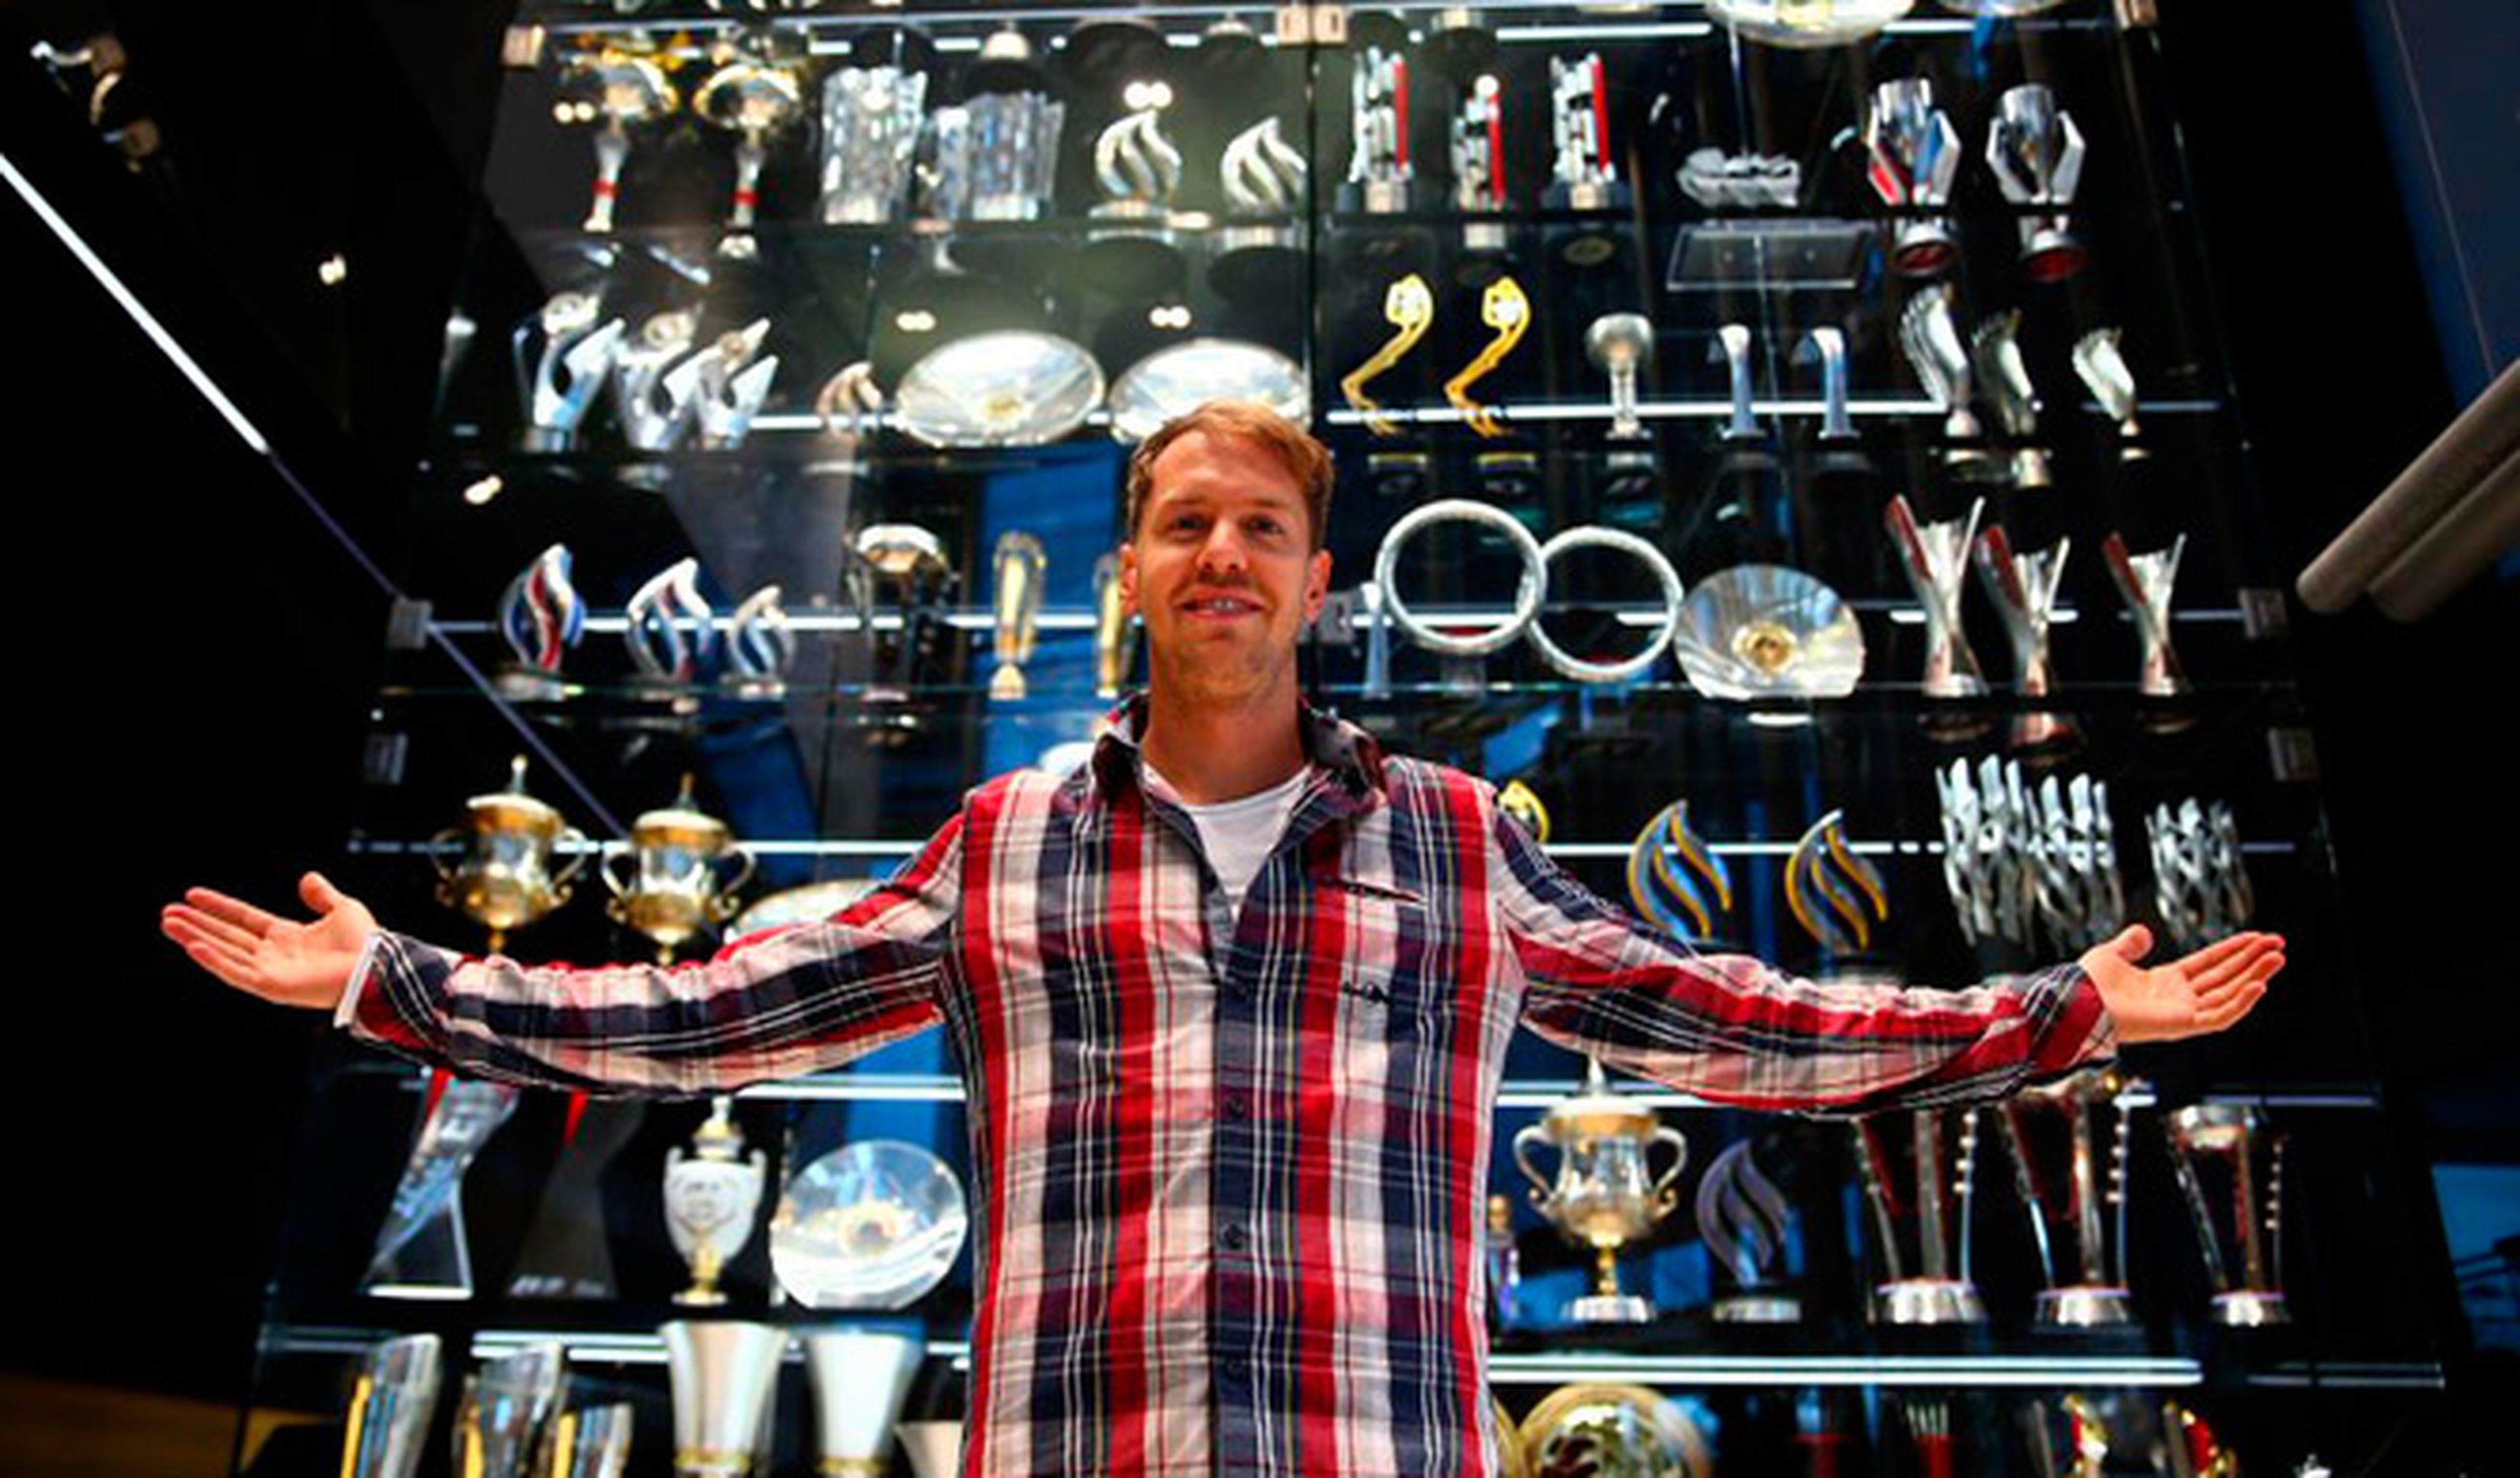 Roban 60 trofeos de la sede de Red Bull, la mayoría réplica